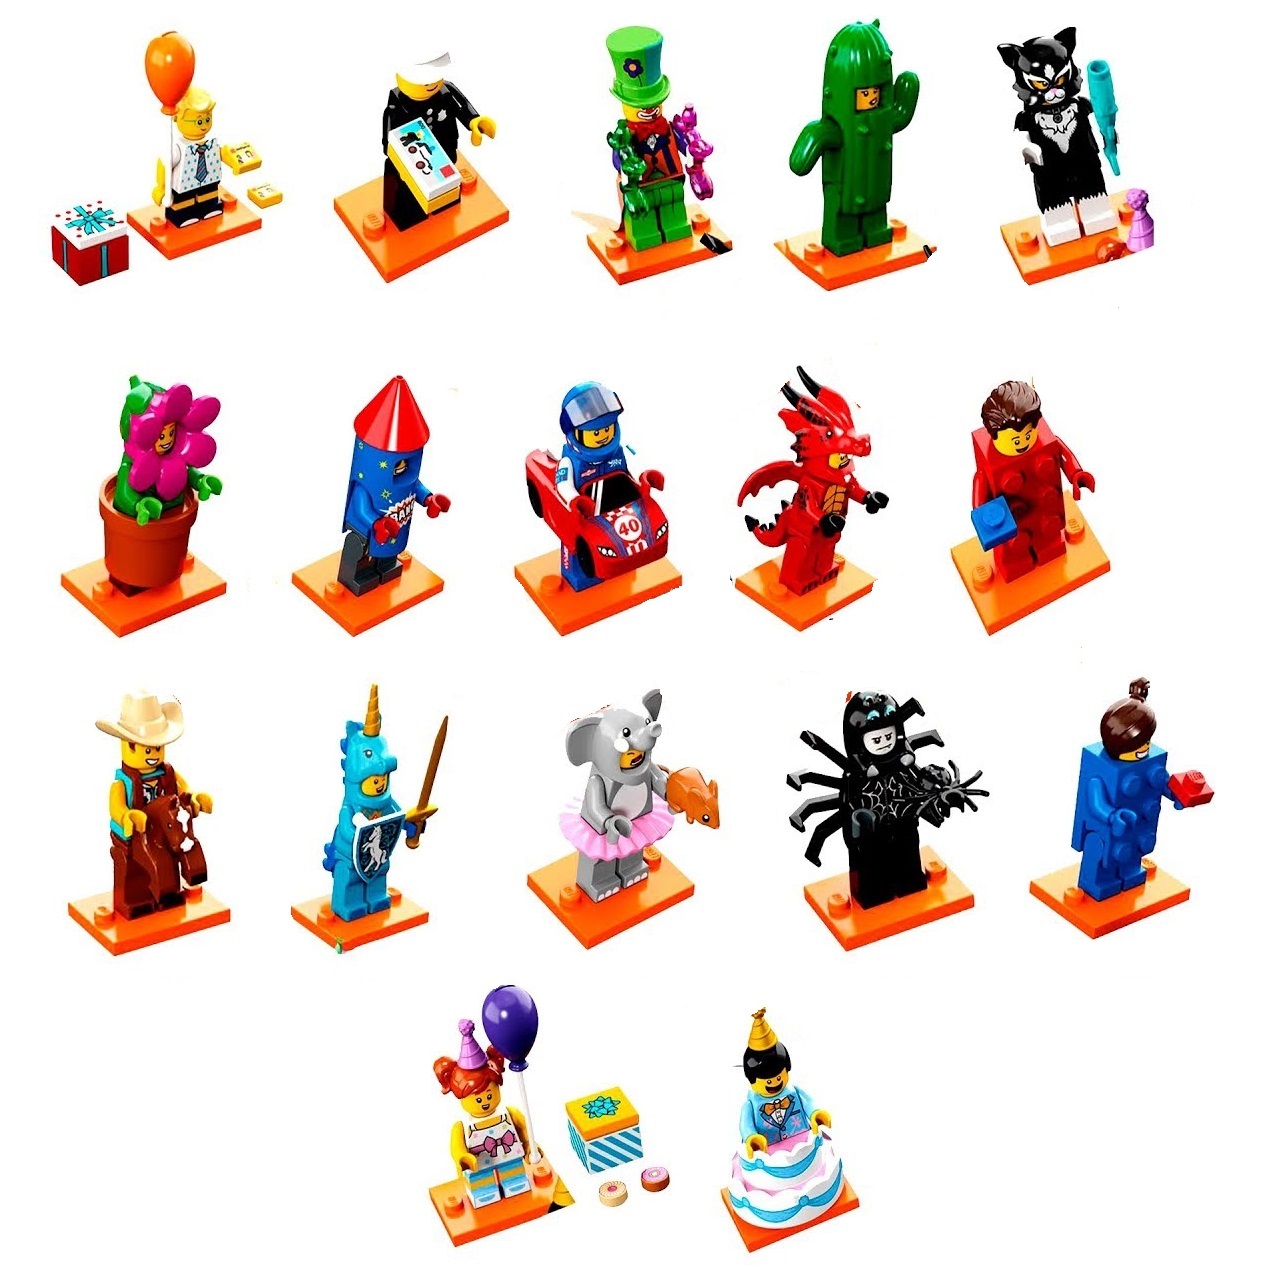 Лего серии: Серии | LEGO.com RU